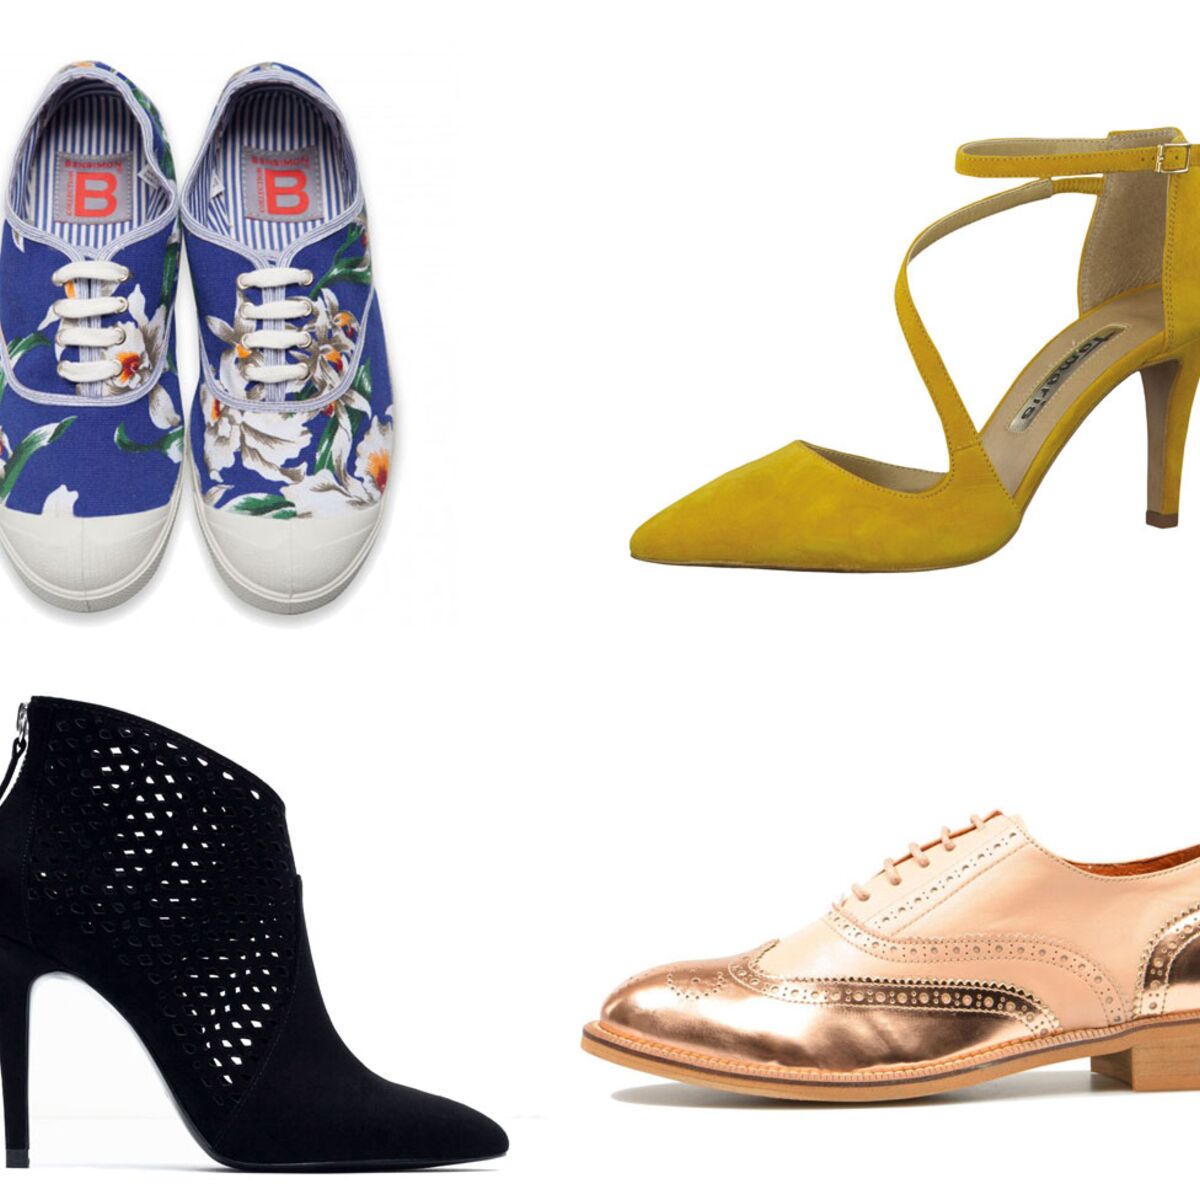 Chaussures printemps-été : ces modèles que l'on veut à nos pieds - Elle